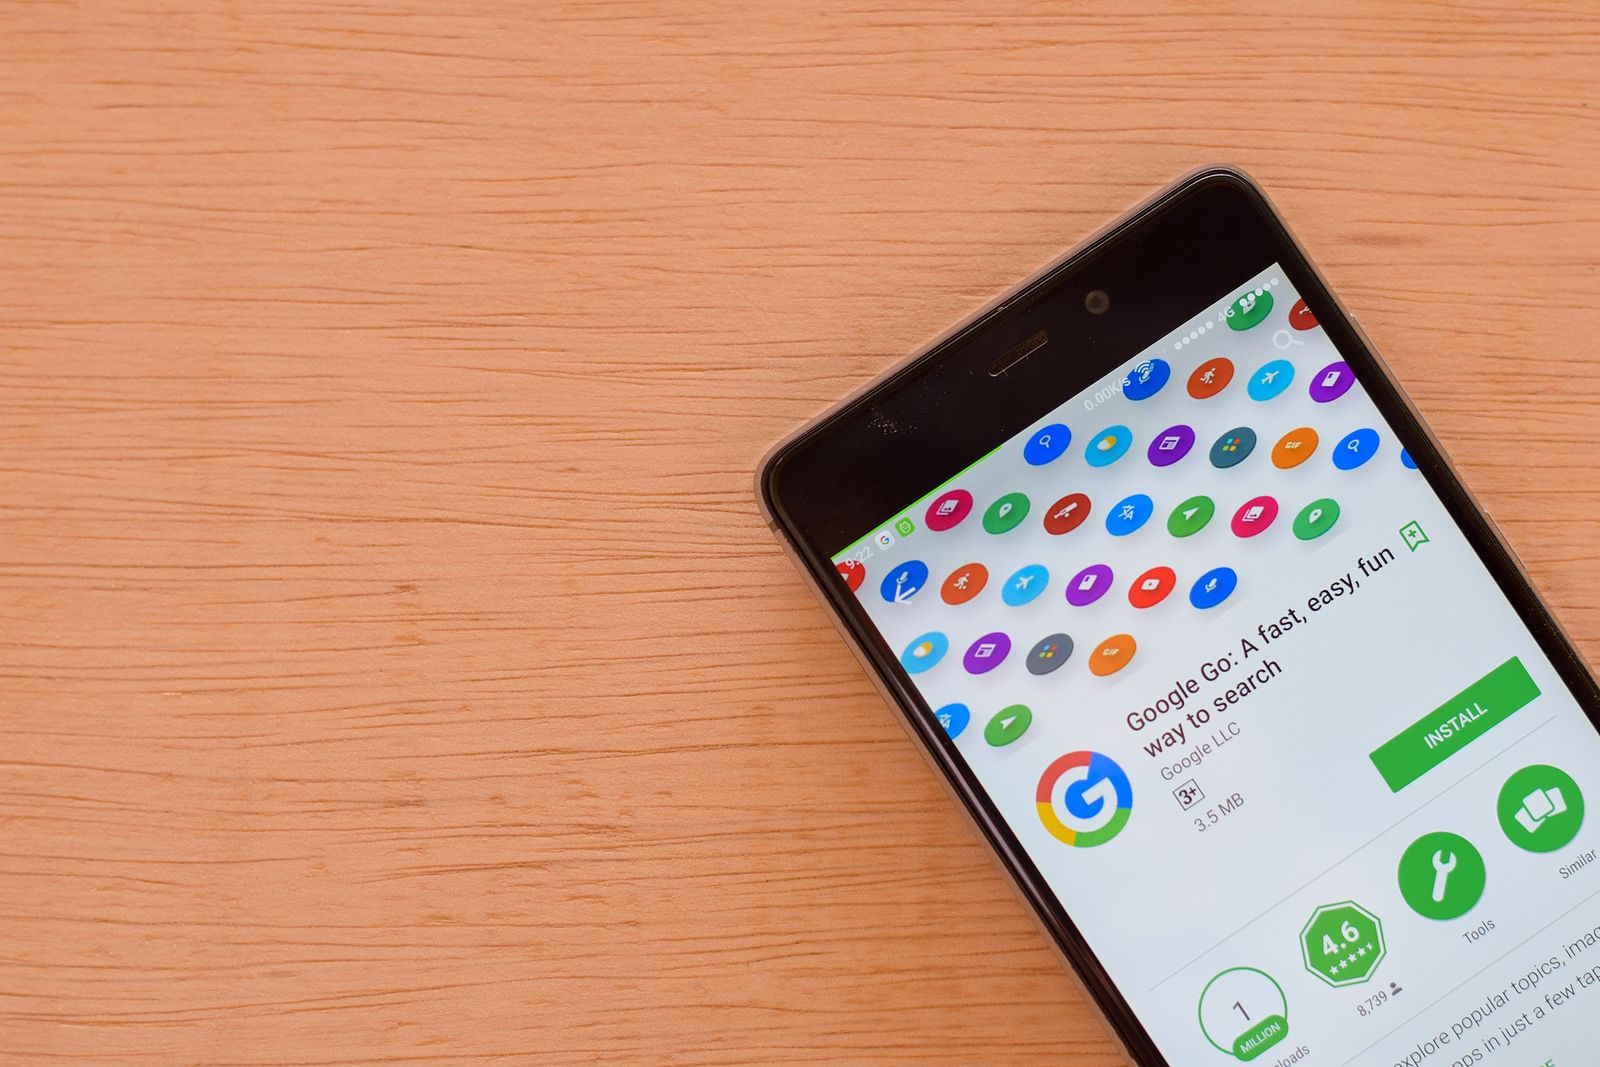 Llega Google Go: la versión 'ligera' del buscador para móviles con poca memoria